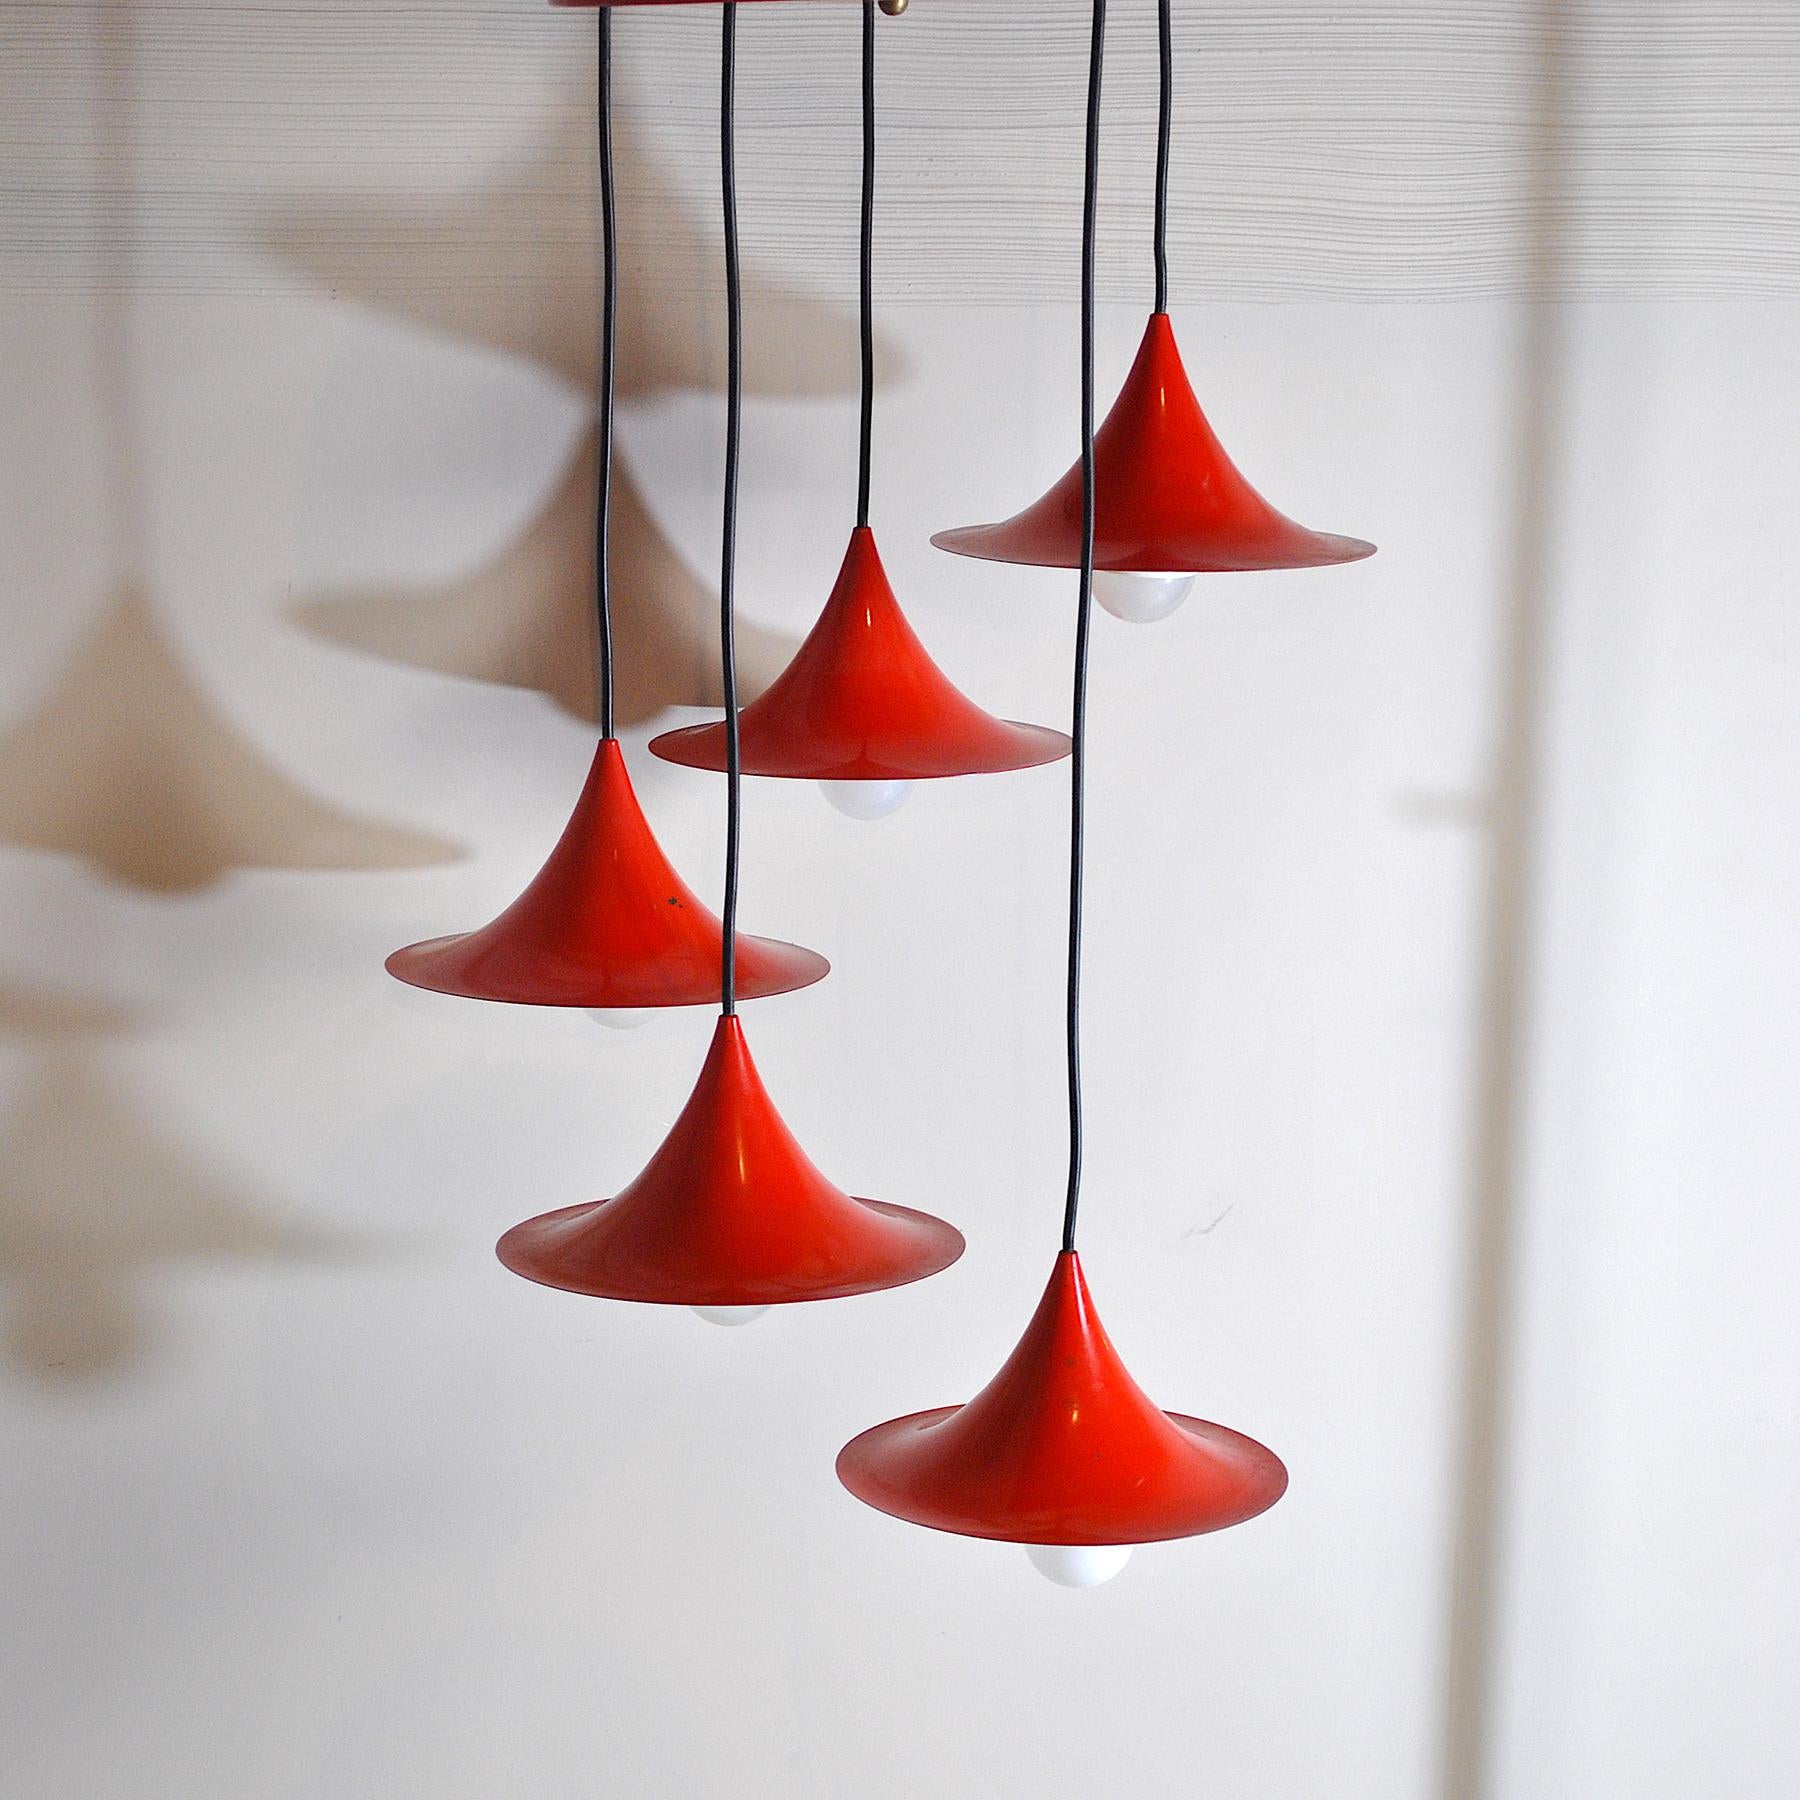 Ensemble de cinq cônes en aluminium laqué rouge, réglables en hauteur, production nordique de Fog & Mørup, années 1960.